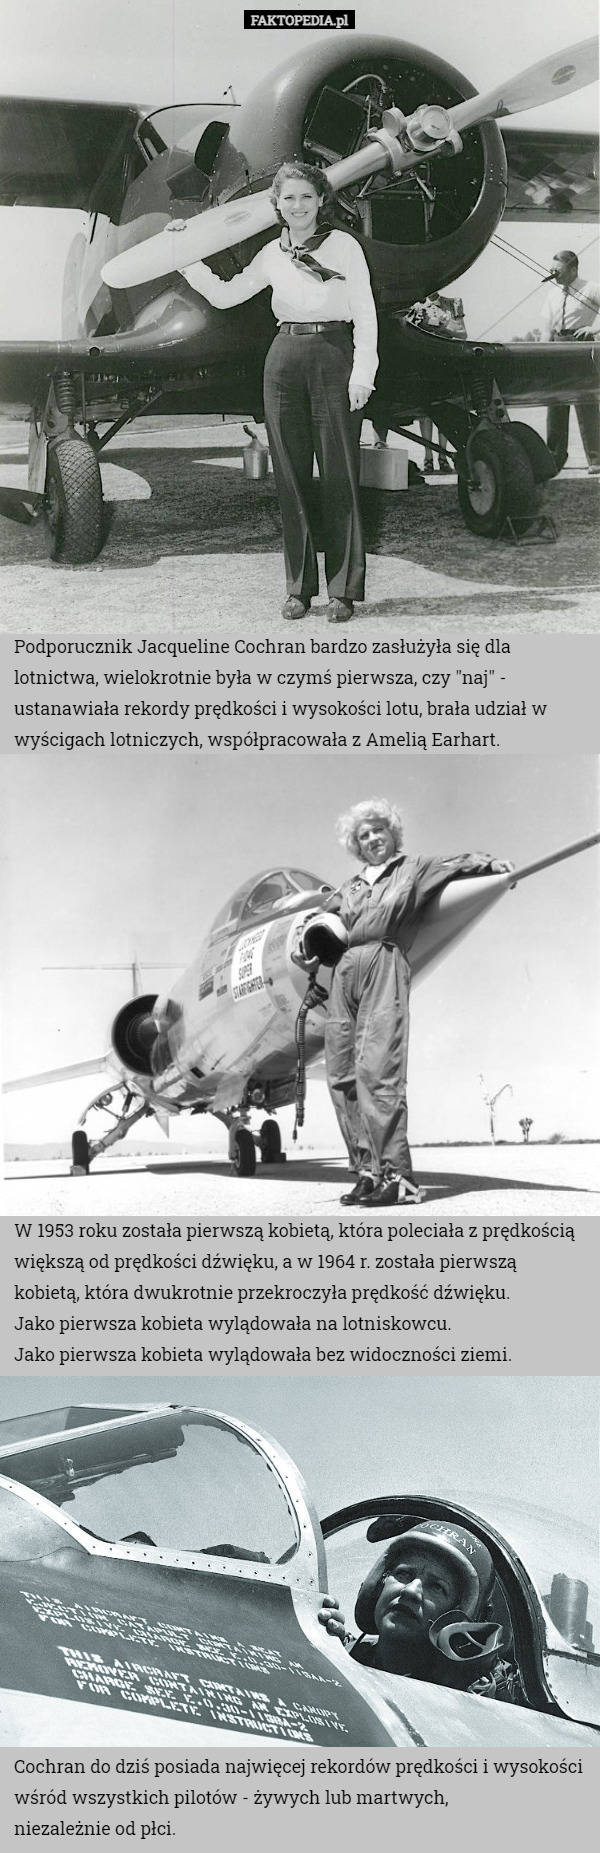 Podporucznik Jacqueline Cochran bardzo zasłużyła się dla lotnictwa, wielokrotnie była w czymś pierwsza, czy "naj" - ustanawiała rekordy prędkości i wysokości lotu, brała udział w wyścigach lotniczych, współpracowała z Amelią Earhart. W 1953 roku została pierwszą kobietą, która poleciała z prędkością większą od prędkości dźwięku, a w 1964 r. została pierwszą kobietą, która dwukrotnie przekroczyła prędkość dźwięku.
Jako pierwsza kobieta wylądowała na lotniskowcu.
Jako pierwsza kobieta wylądowała bez widoczności ziemi. Cochran do dziś posiada najwięcej rekordów prędkości i wysokości wśród wszystkich pilotów - żywych lub martwych,
 niezależnie od płci. 